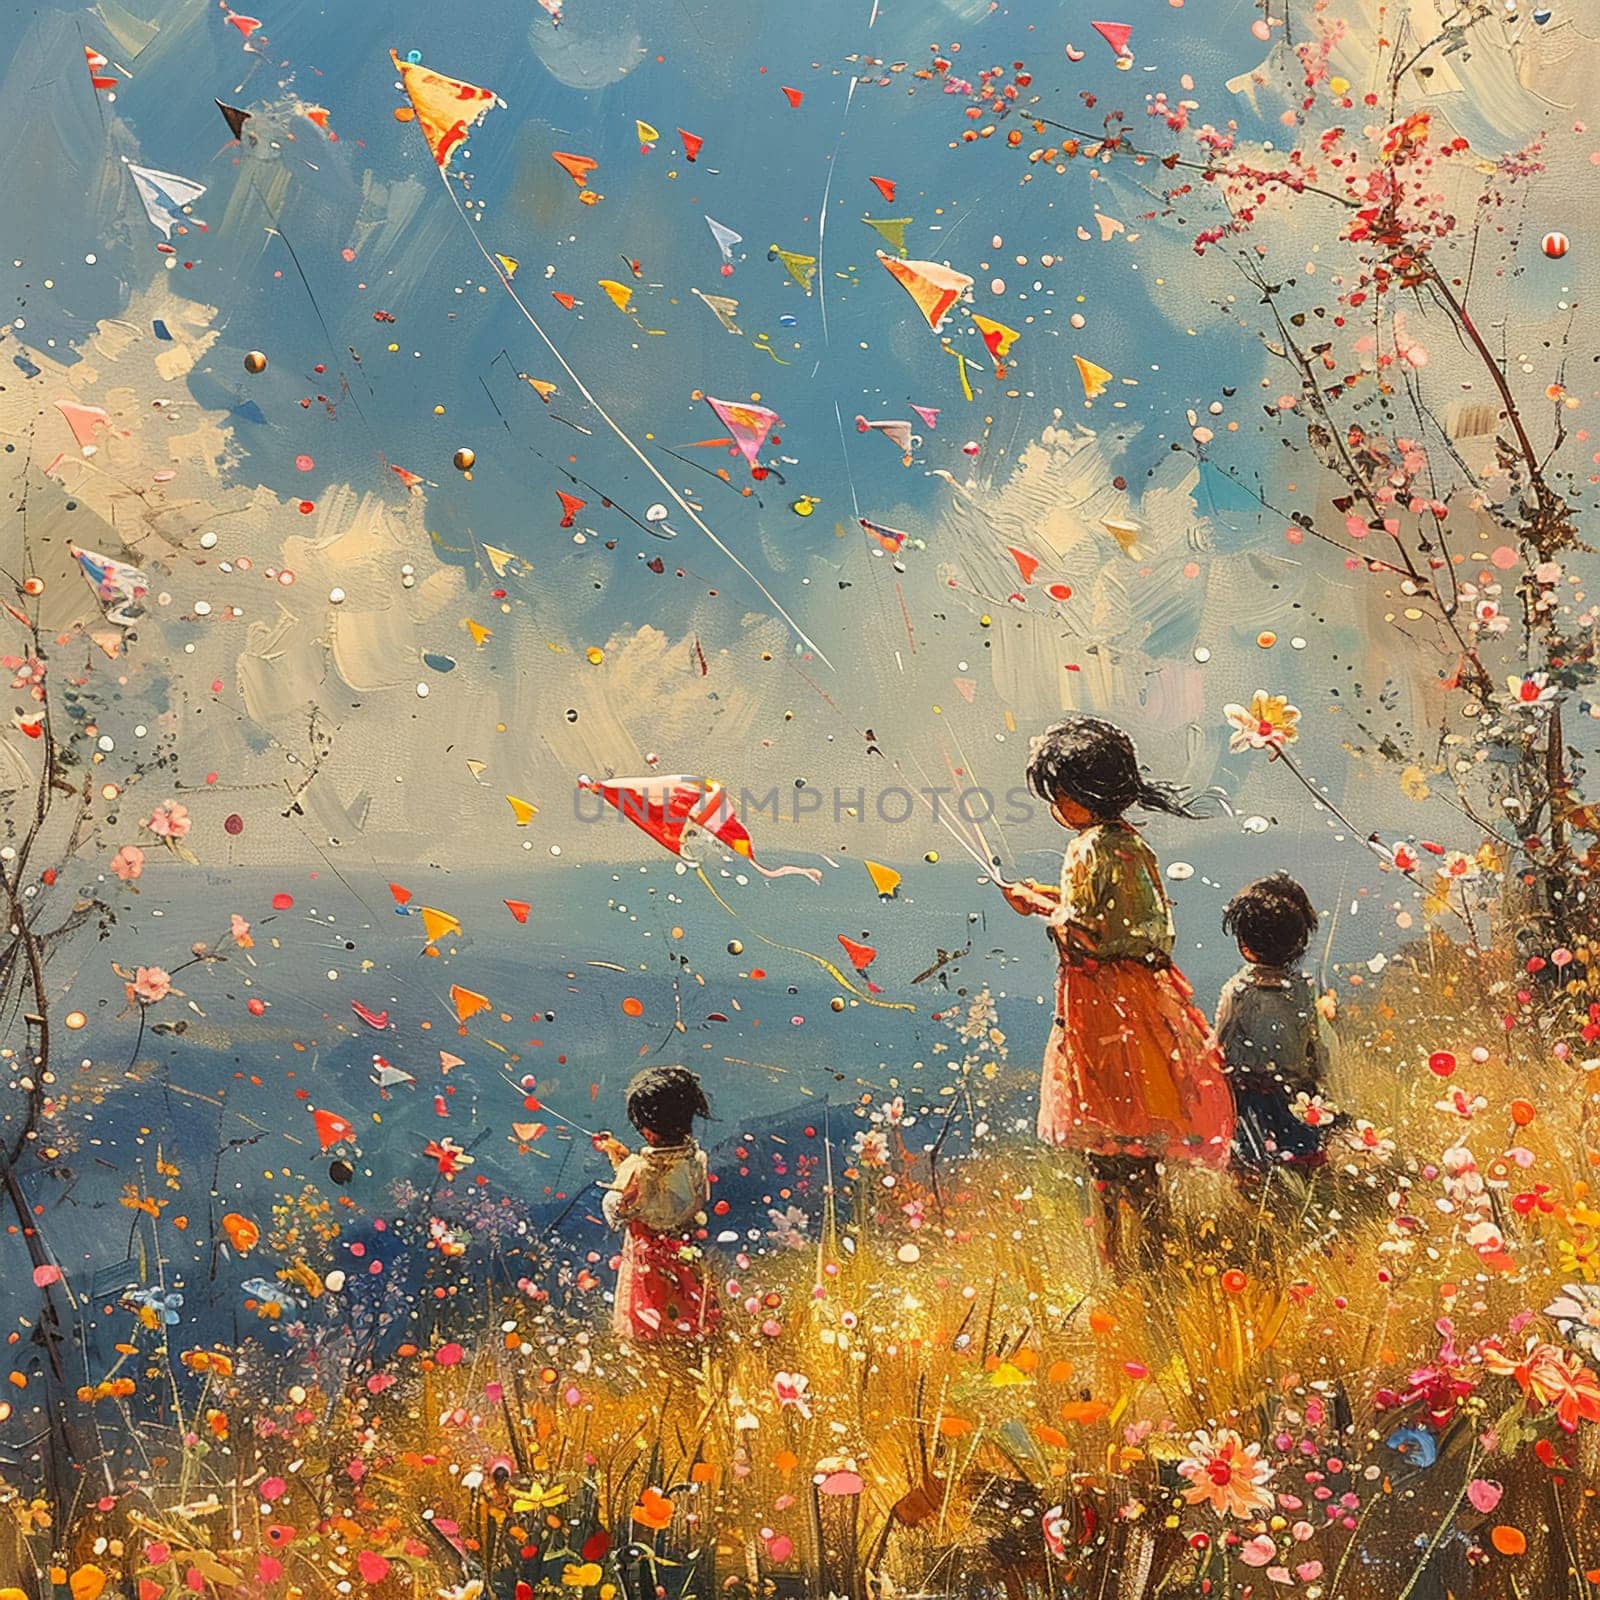 Scene of children flying kites in field of blooming flowers for Pakistani Spring Festival